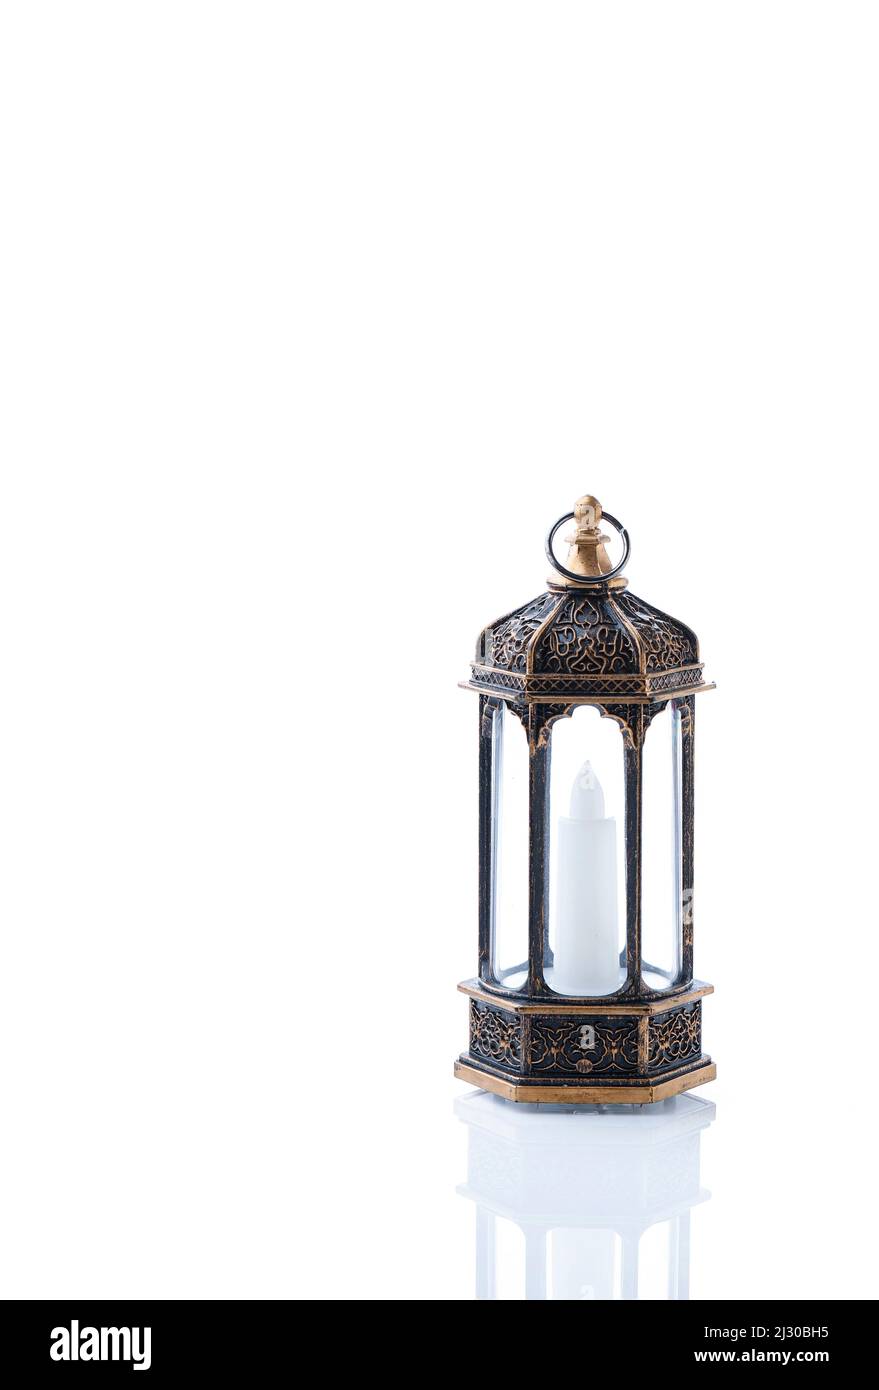 Lanterna Araba ornamentale con candela che brucia su sfondo bianco. Biglietto di auguri per le feste, invito al mese Santo musulmano Ramadan Kareem. Foto Stock